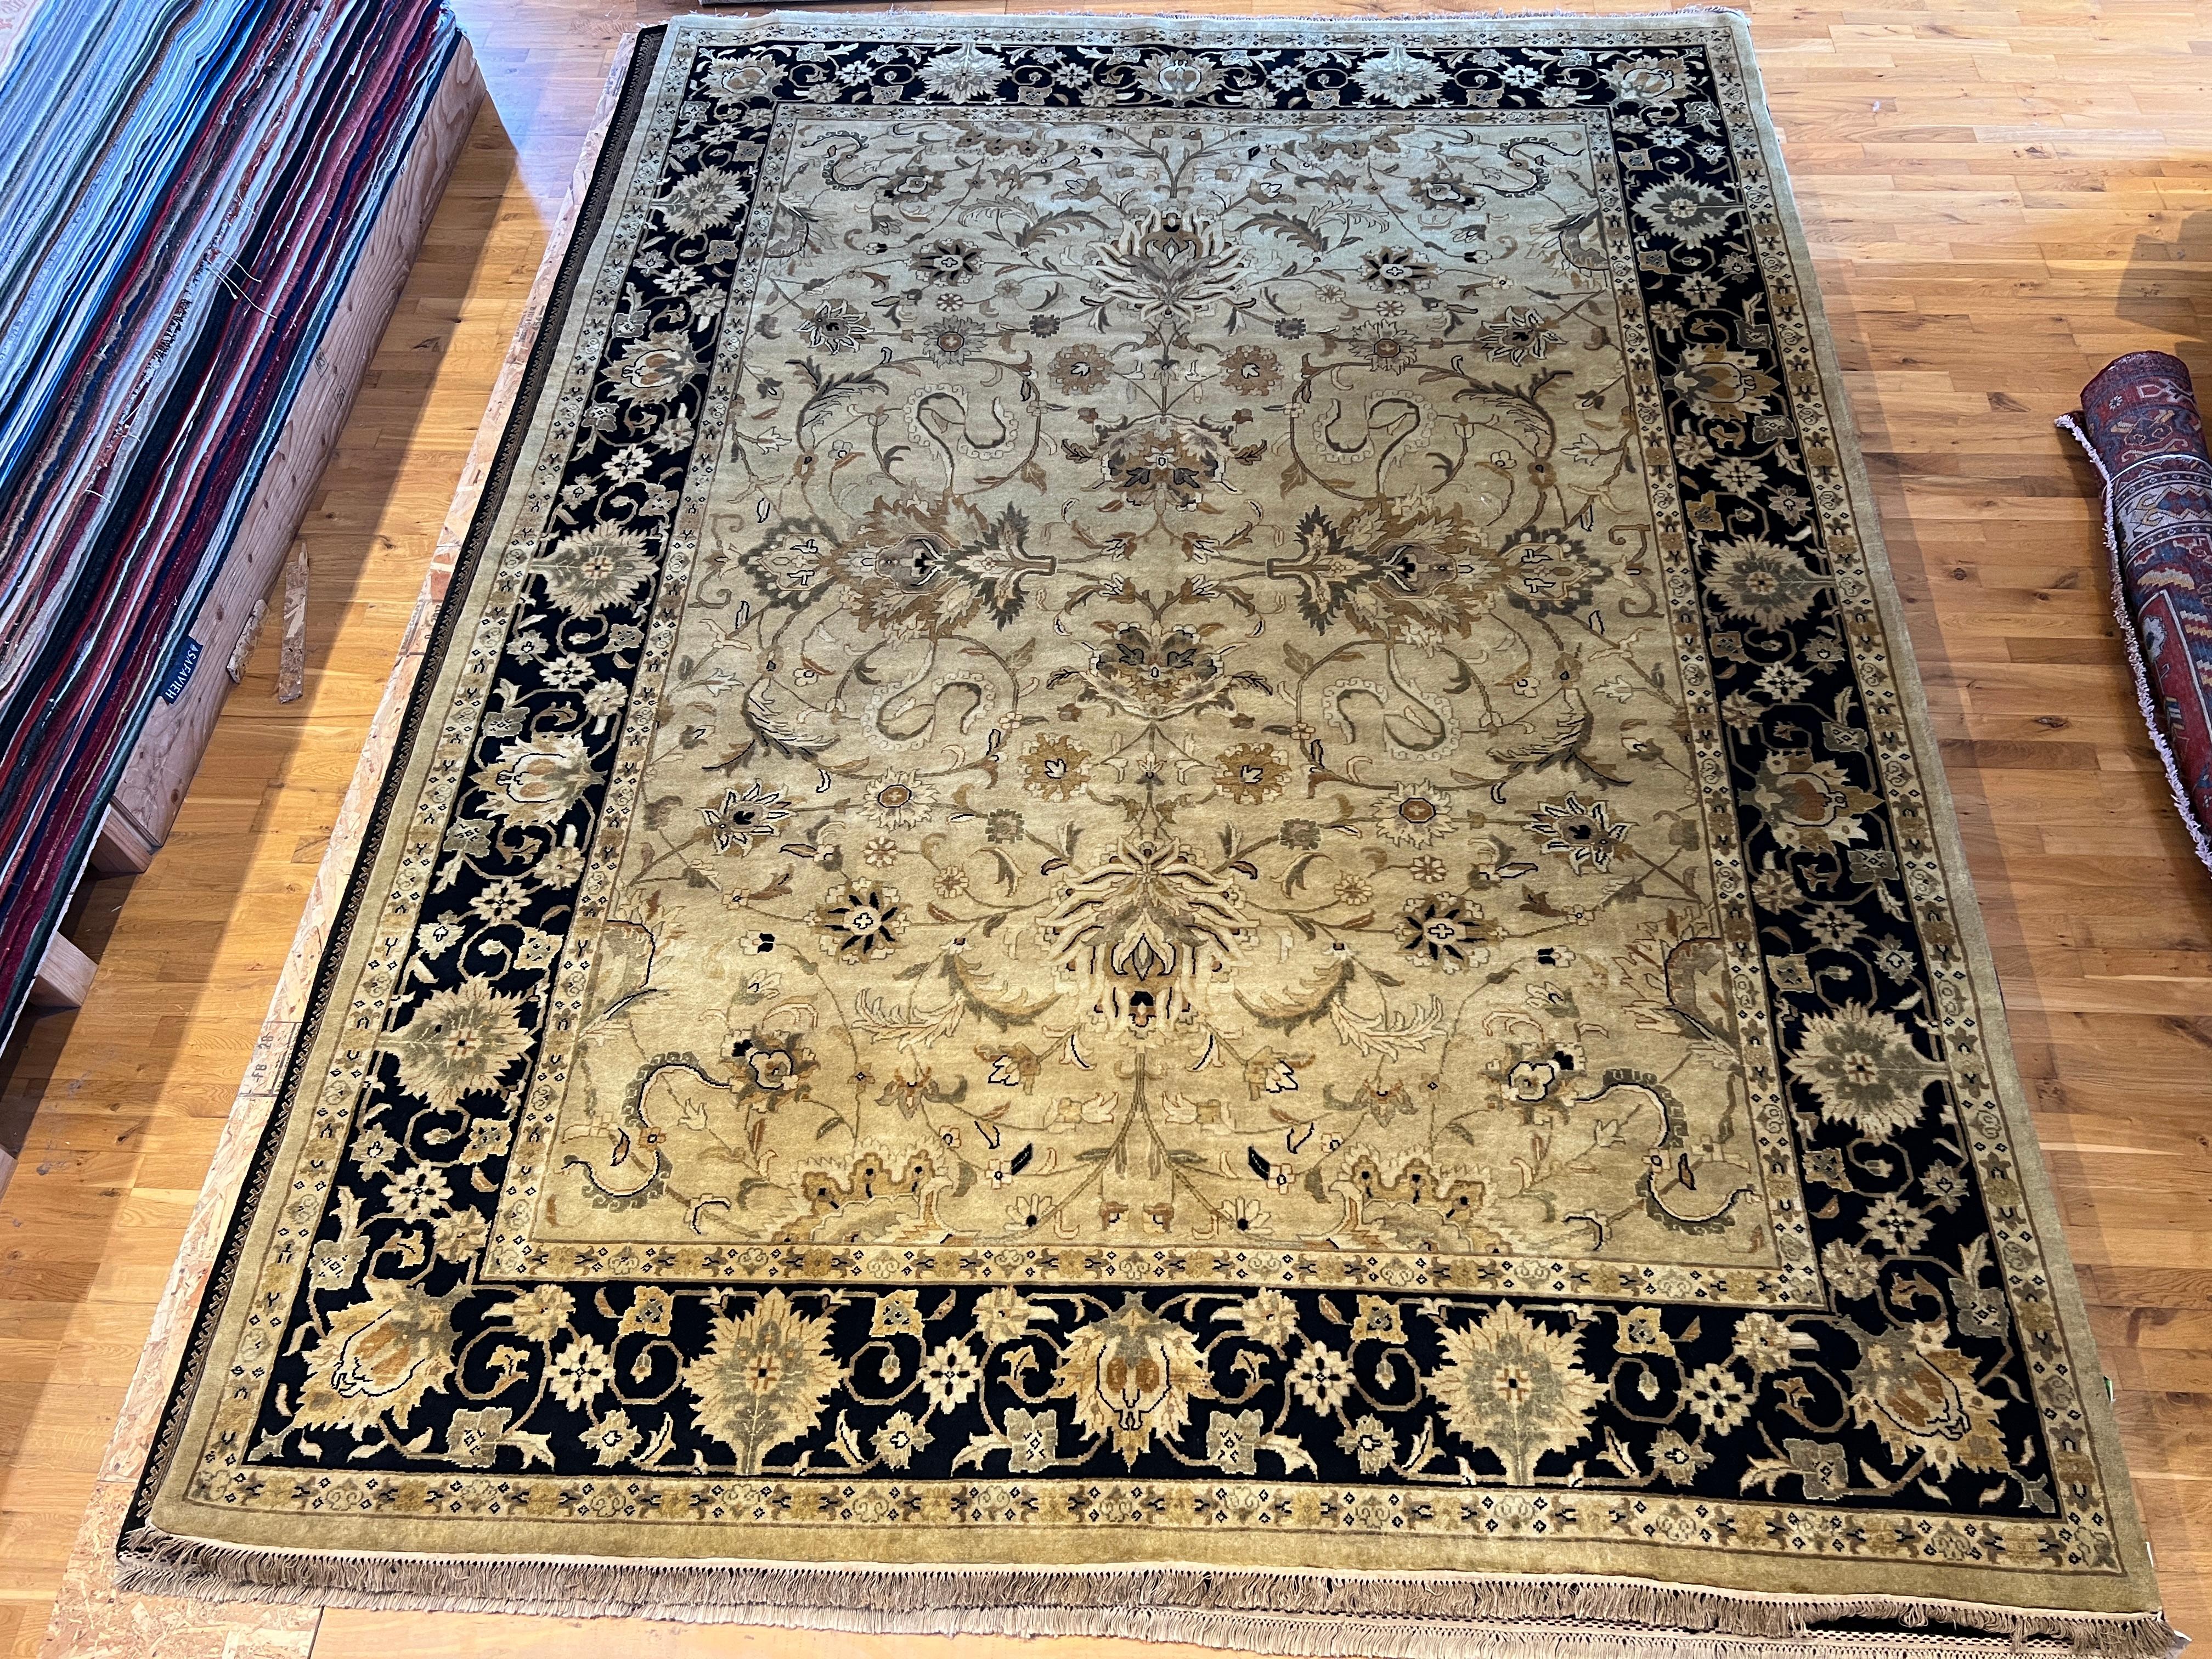 Voici notre magnifique tapis persan 9'x12', noué à la main en Inde avec de la laine et des teintures naturelles. Doté d'une bordure noire modernisée et d'un champ ivoire, ce tapis ajoutera une touche d'élégance et de sophistication à n'importe